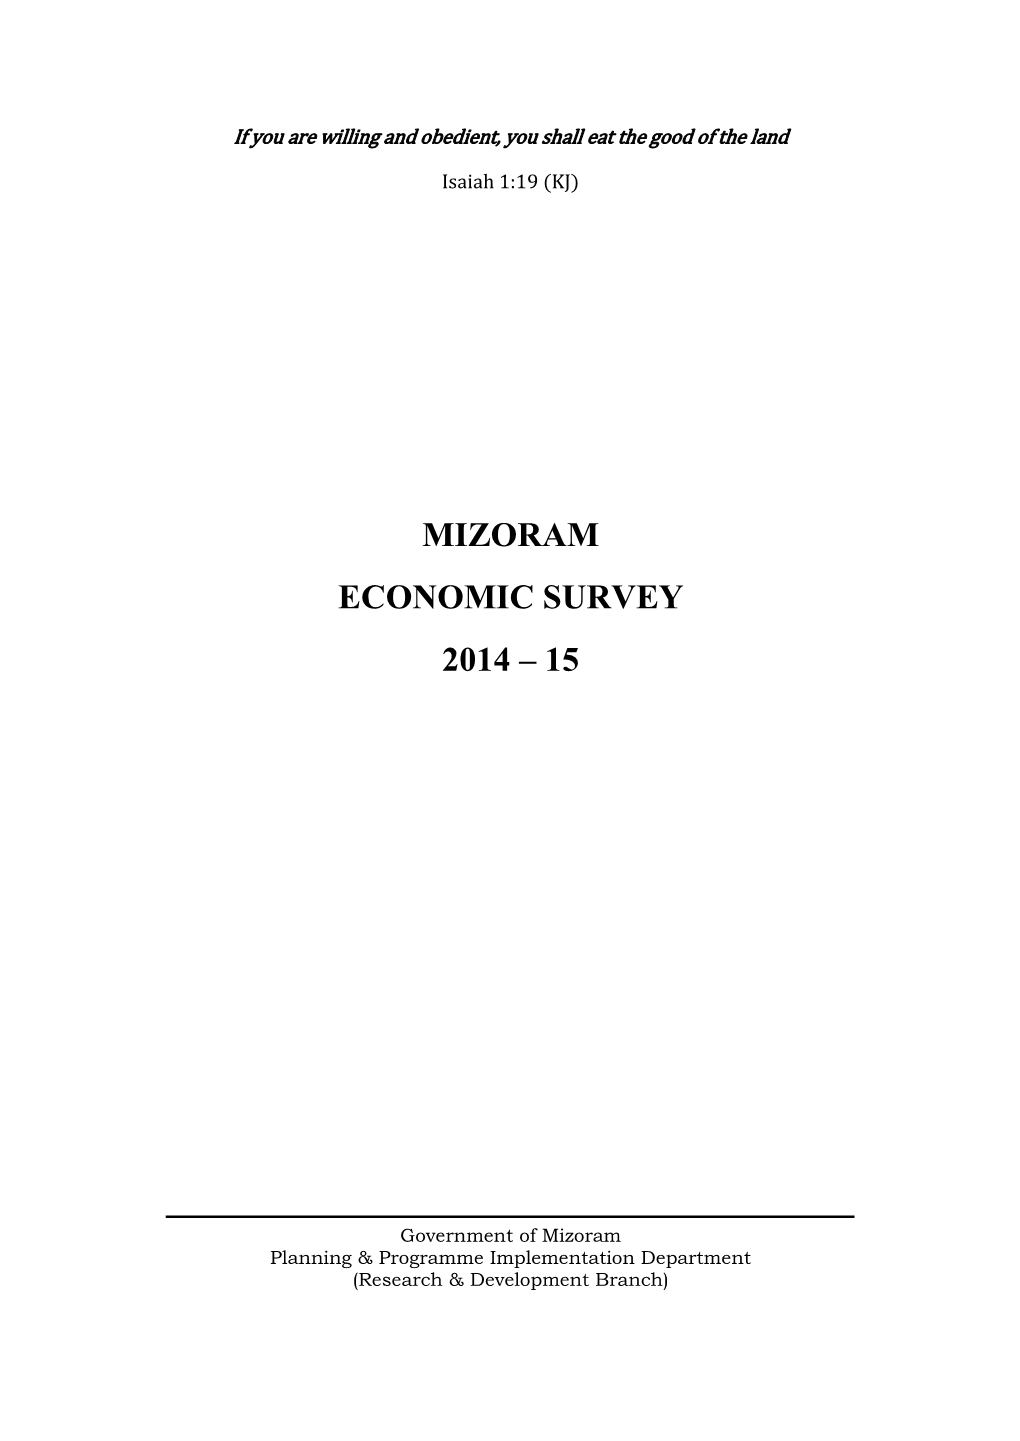 Mizoram Economic Survey 2014 – 15